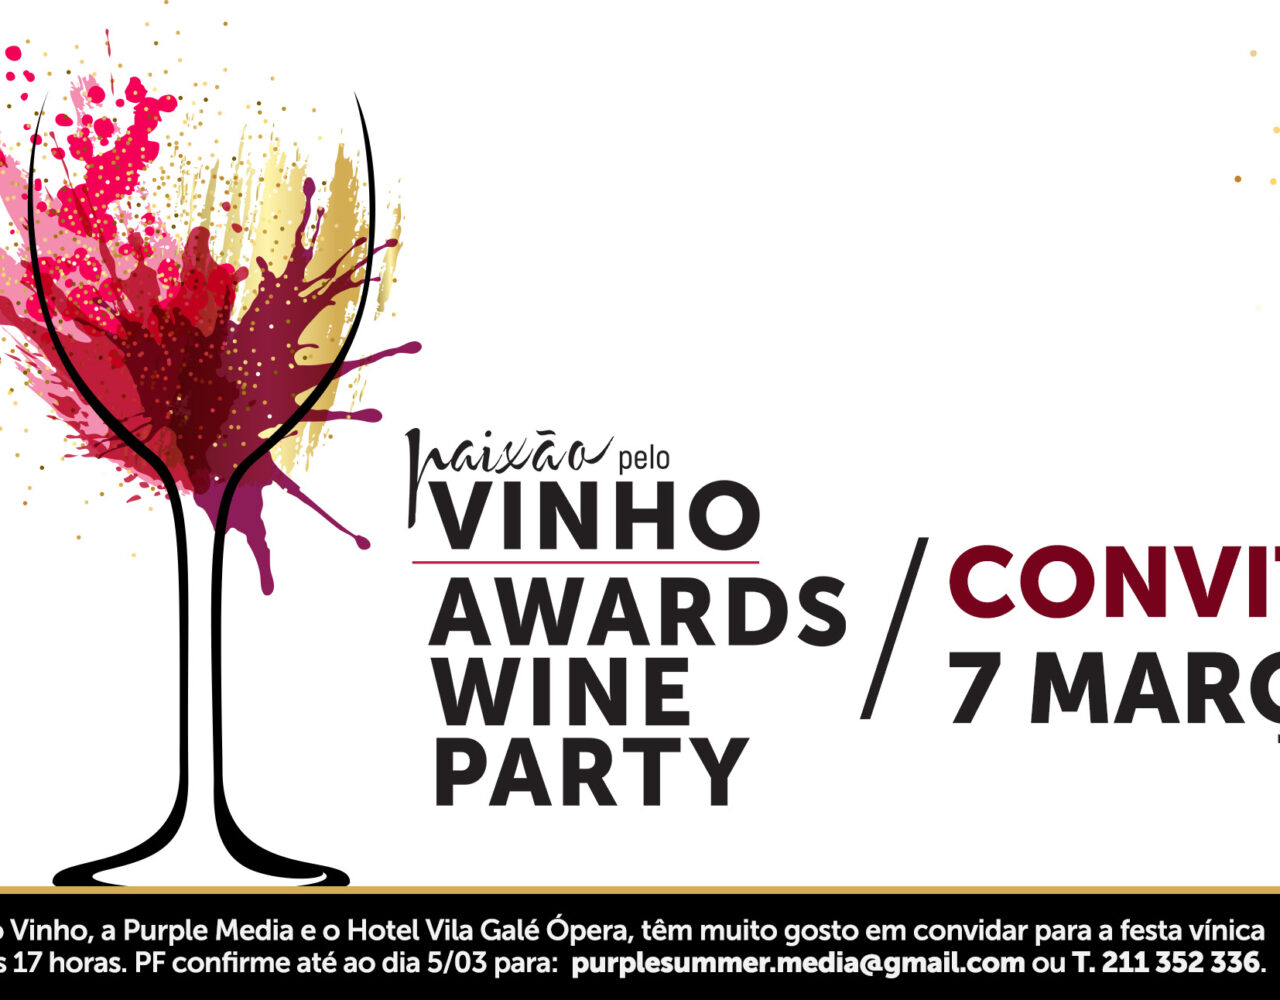 Paixão Pelo Vinho Awards Wine Party